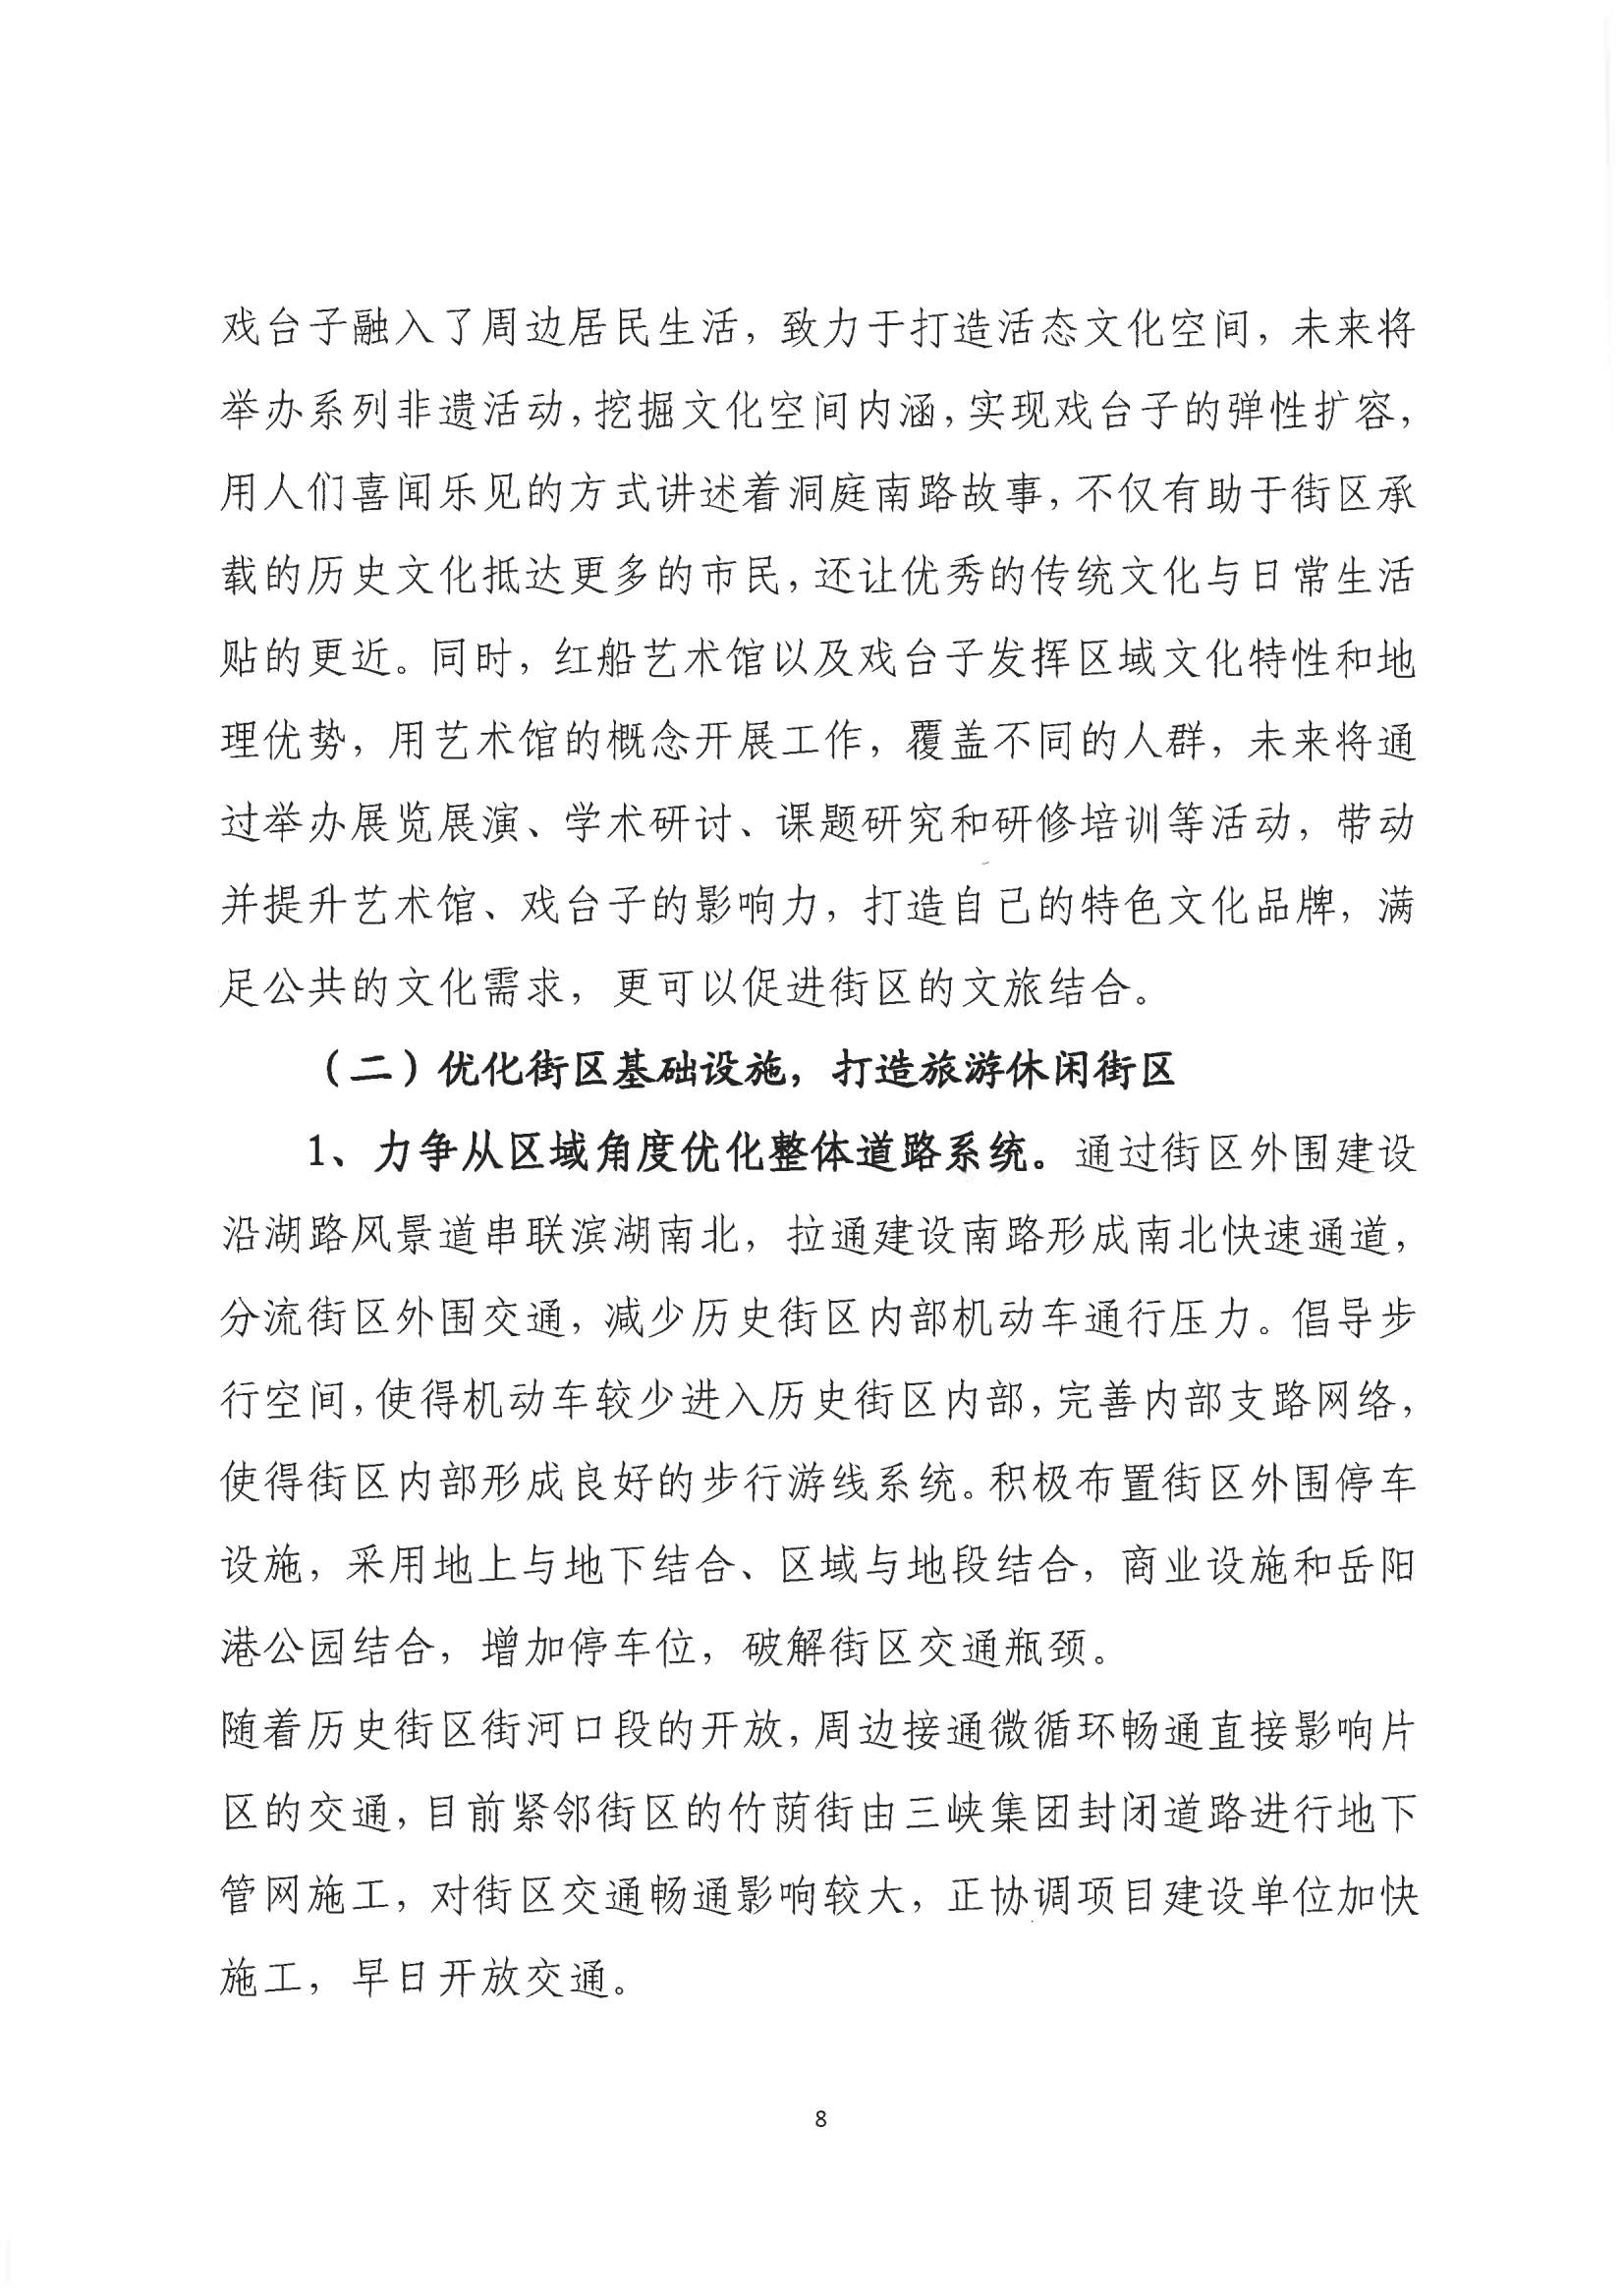 001号提案关于岳阳市政协九届一次会议第001号提案的回复(1)_07.png